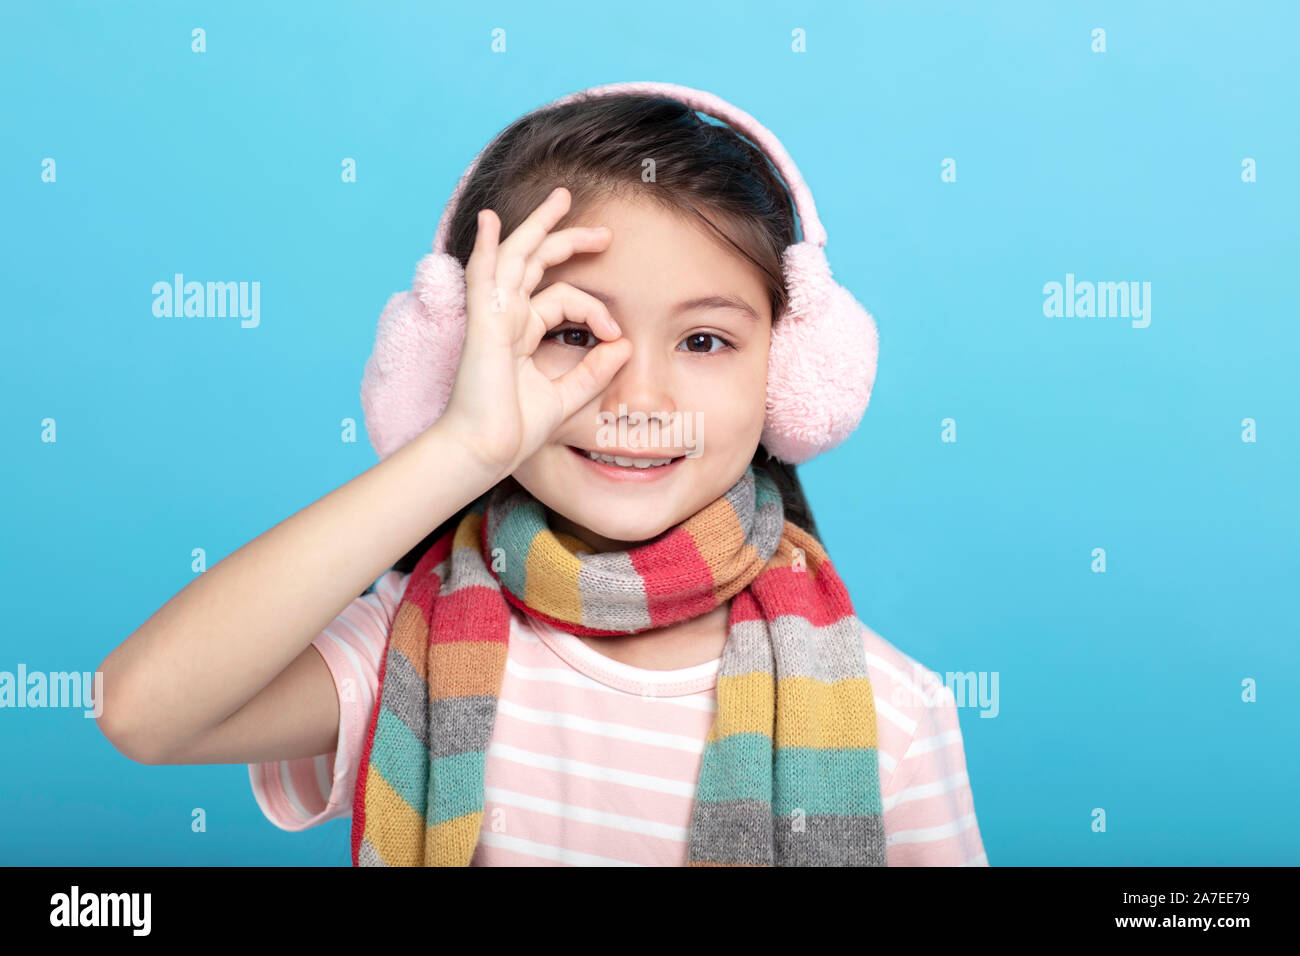 Portrait de sourire petite fille dans des vêtements d'hiver Banque D'Images